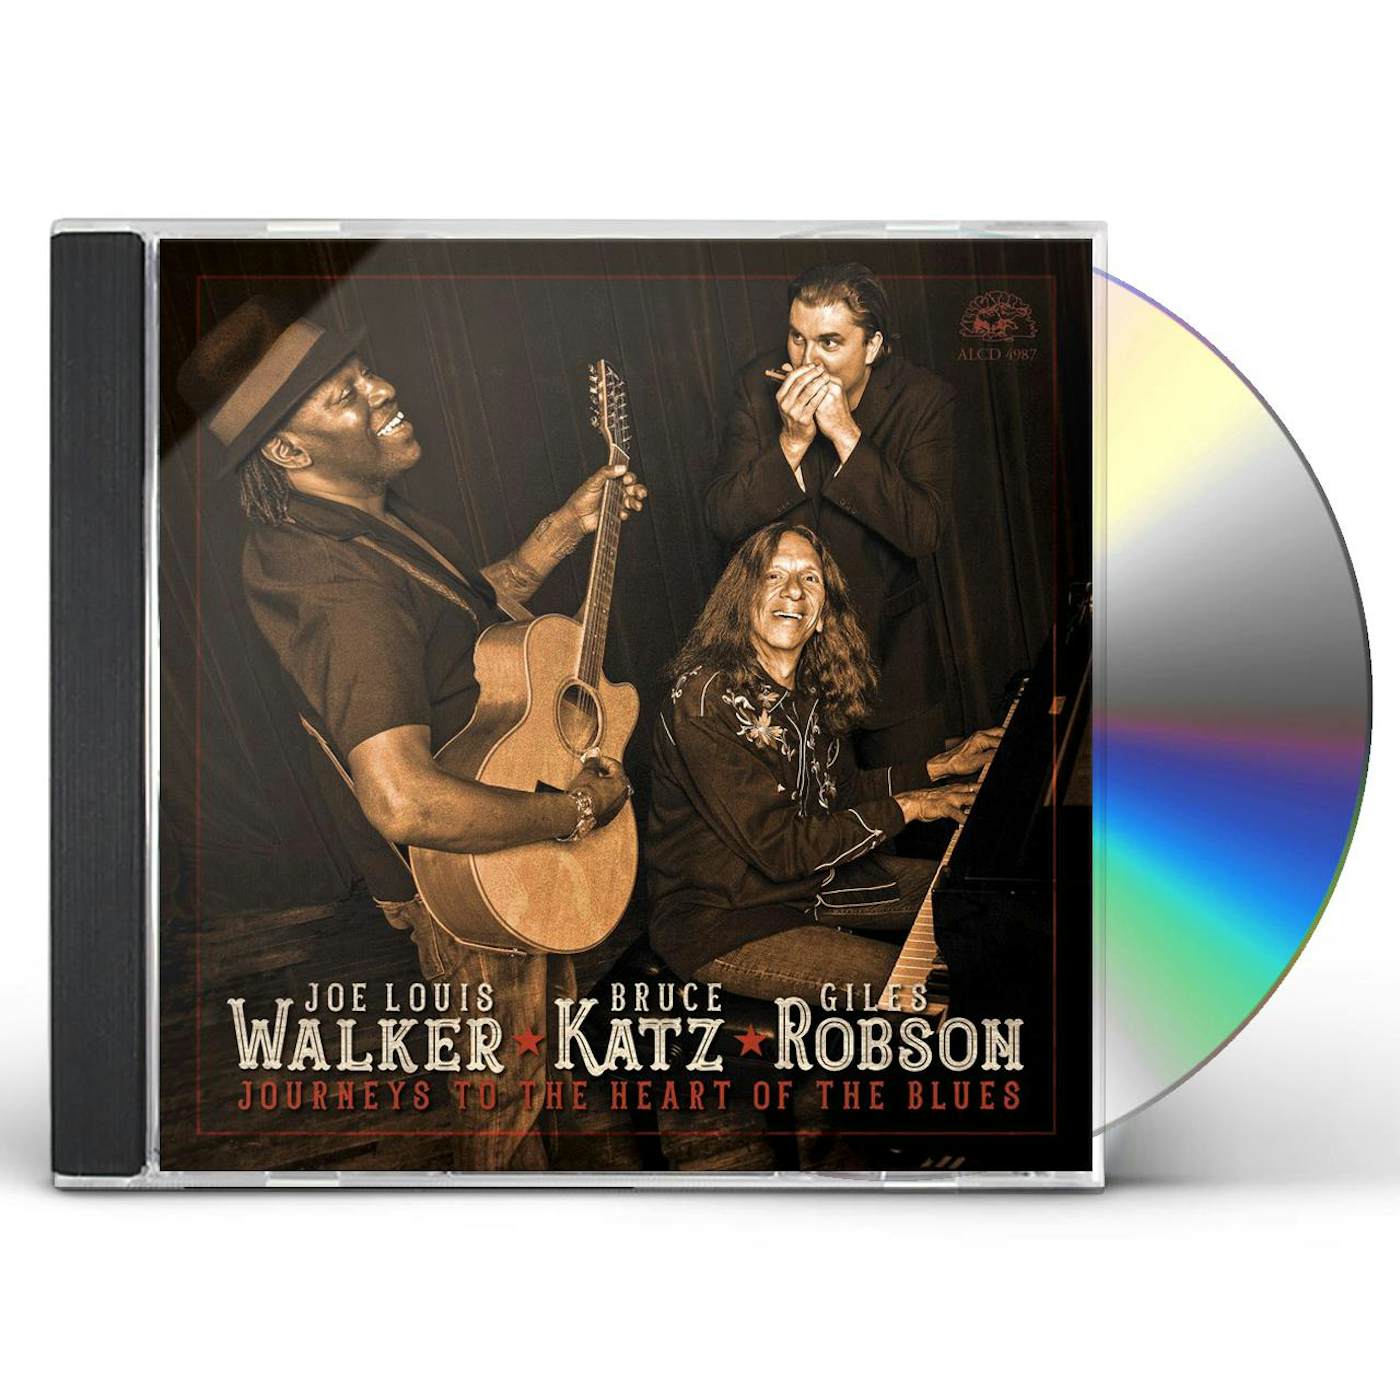 Joe Louis Walker Journeys to The Heart of The Blues CD